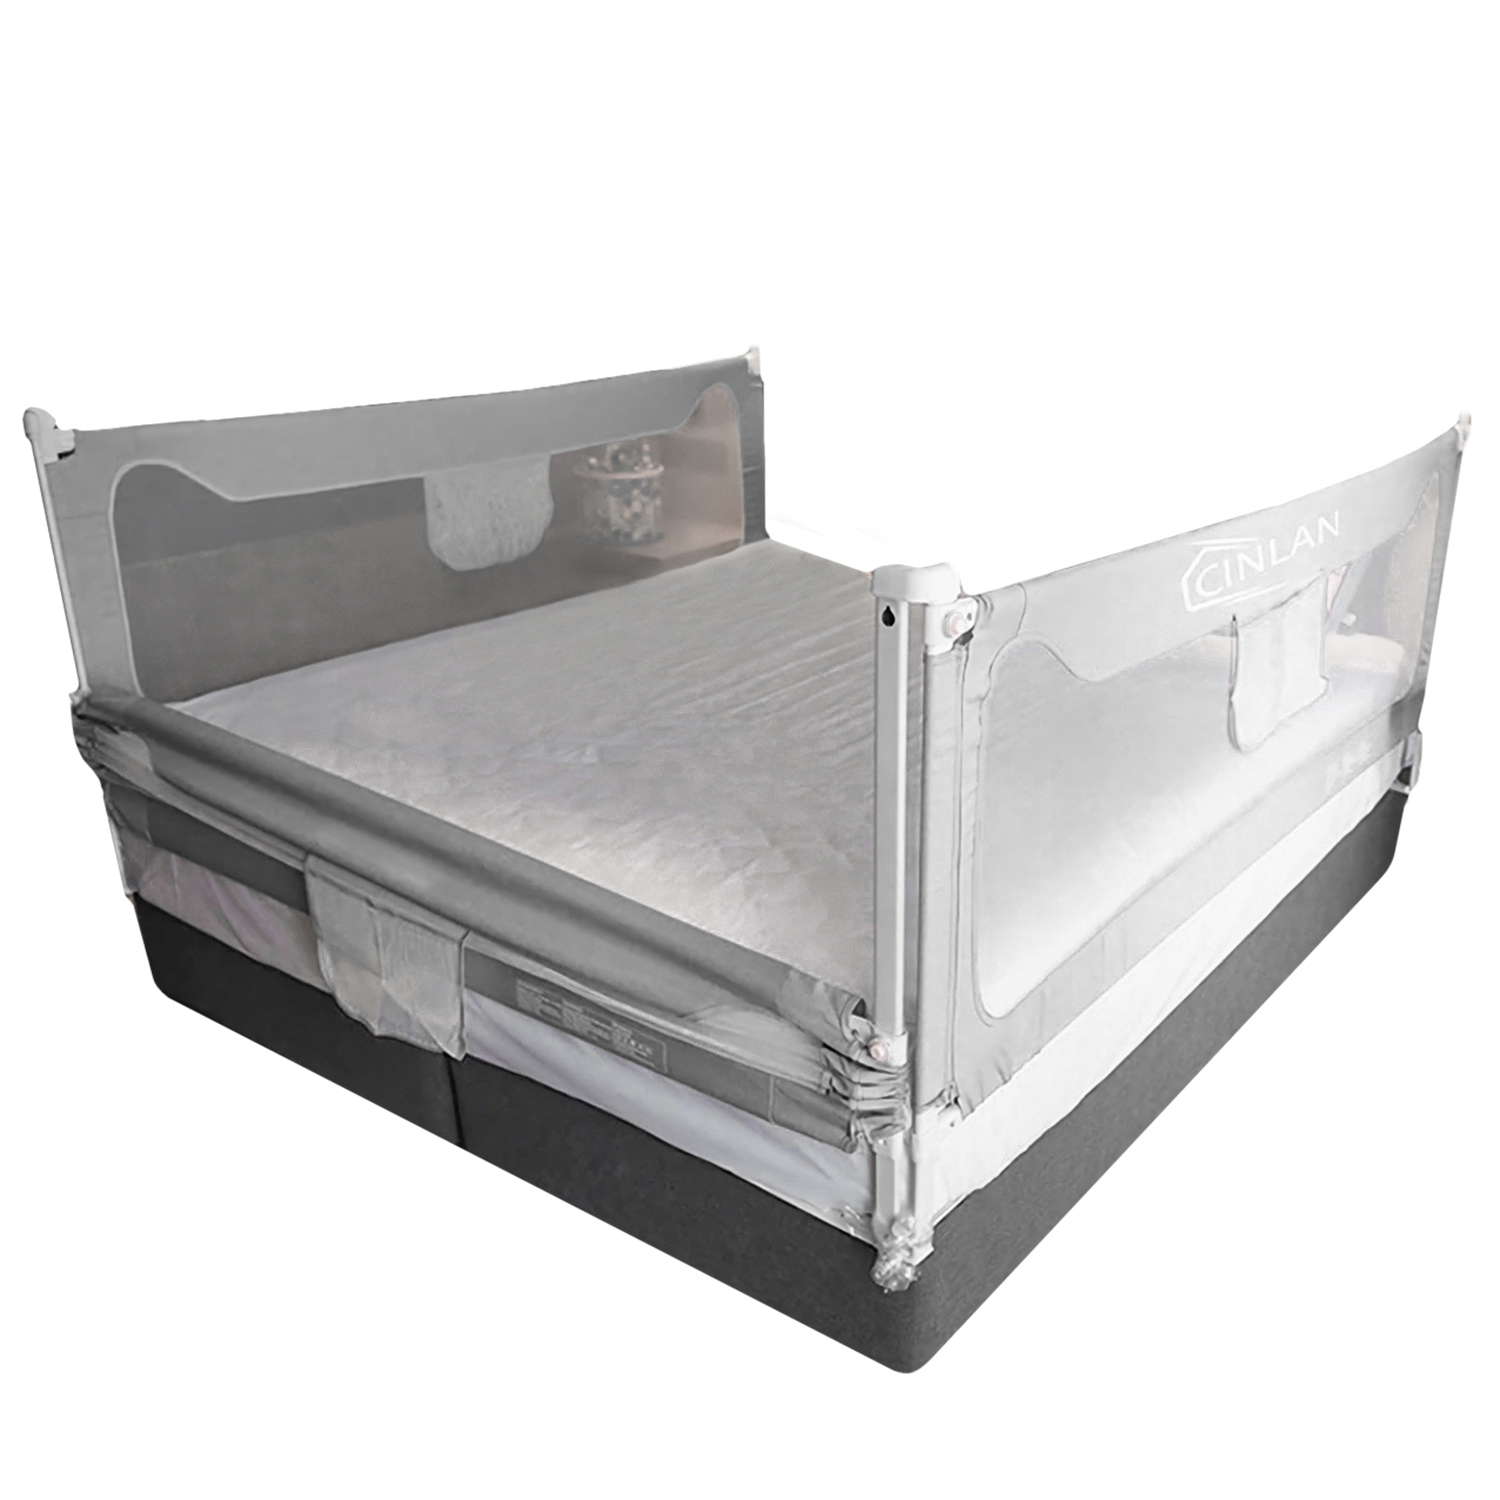 Барьер защитный для кровати CINLANKIDS 150х66 см - фото 6